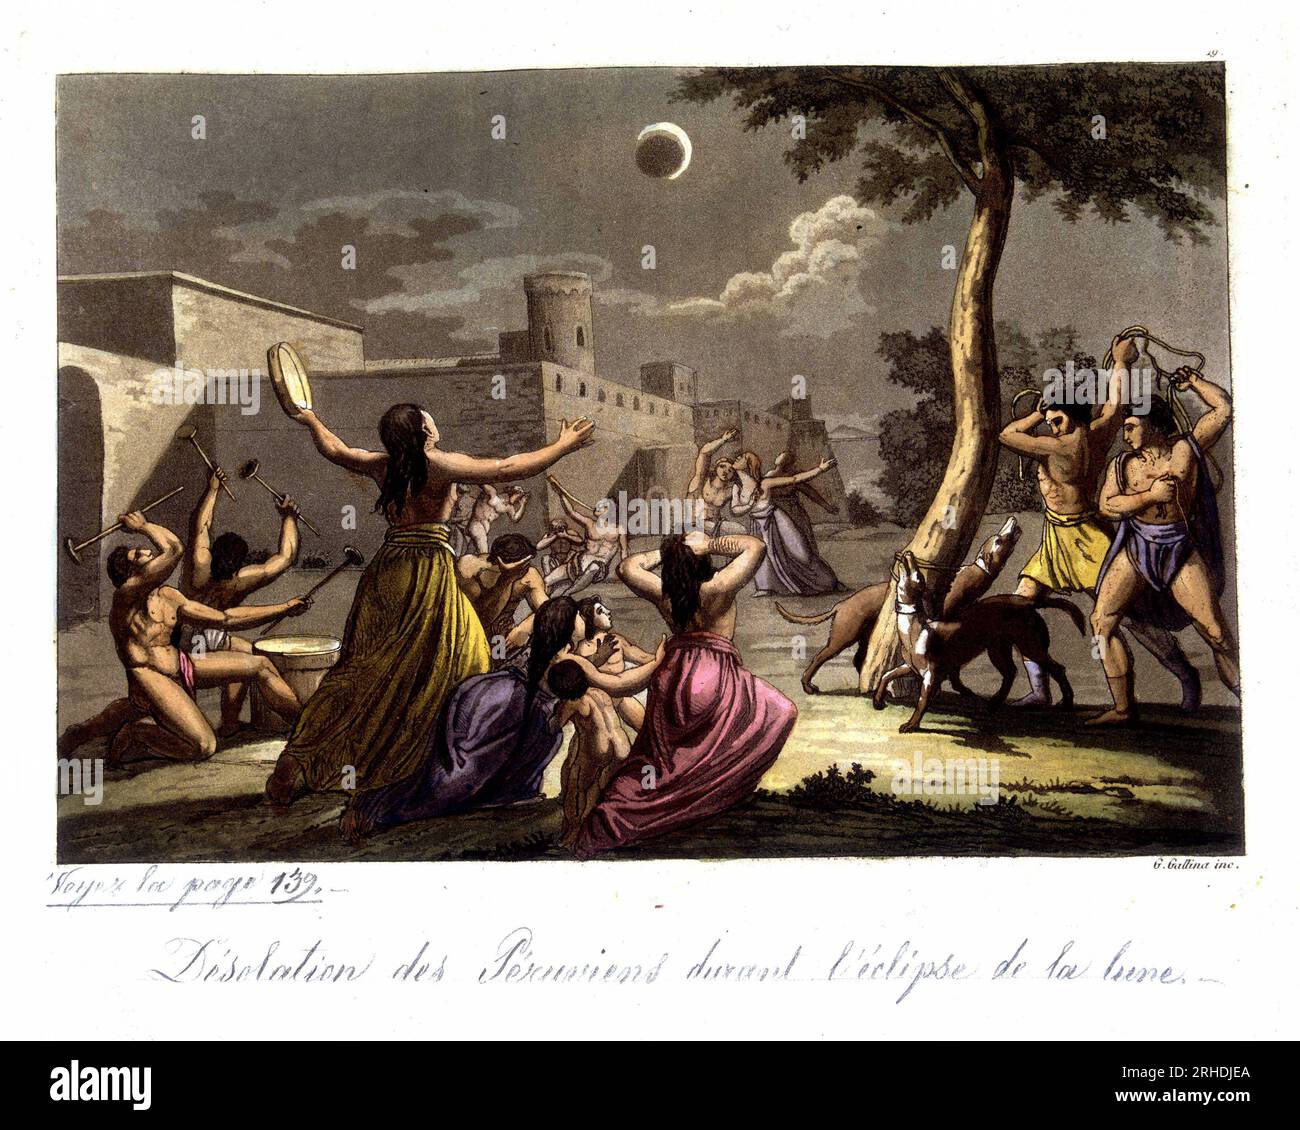 Anciens Peruviens (Incas) devant une eclipse de lune - in 'Le Costume ancien et moderne' de Jules Ferrario, 1819-1820 Foto Stock